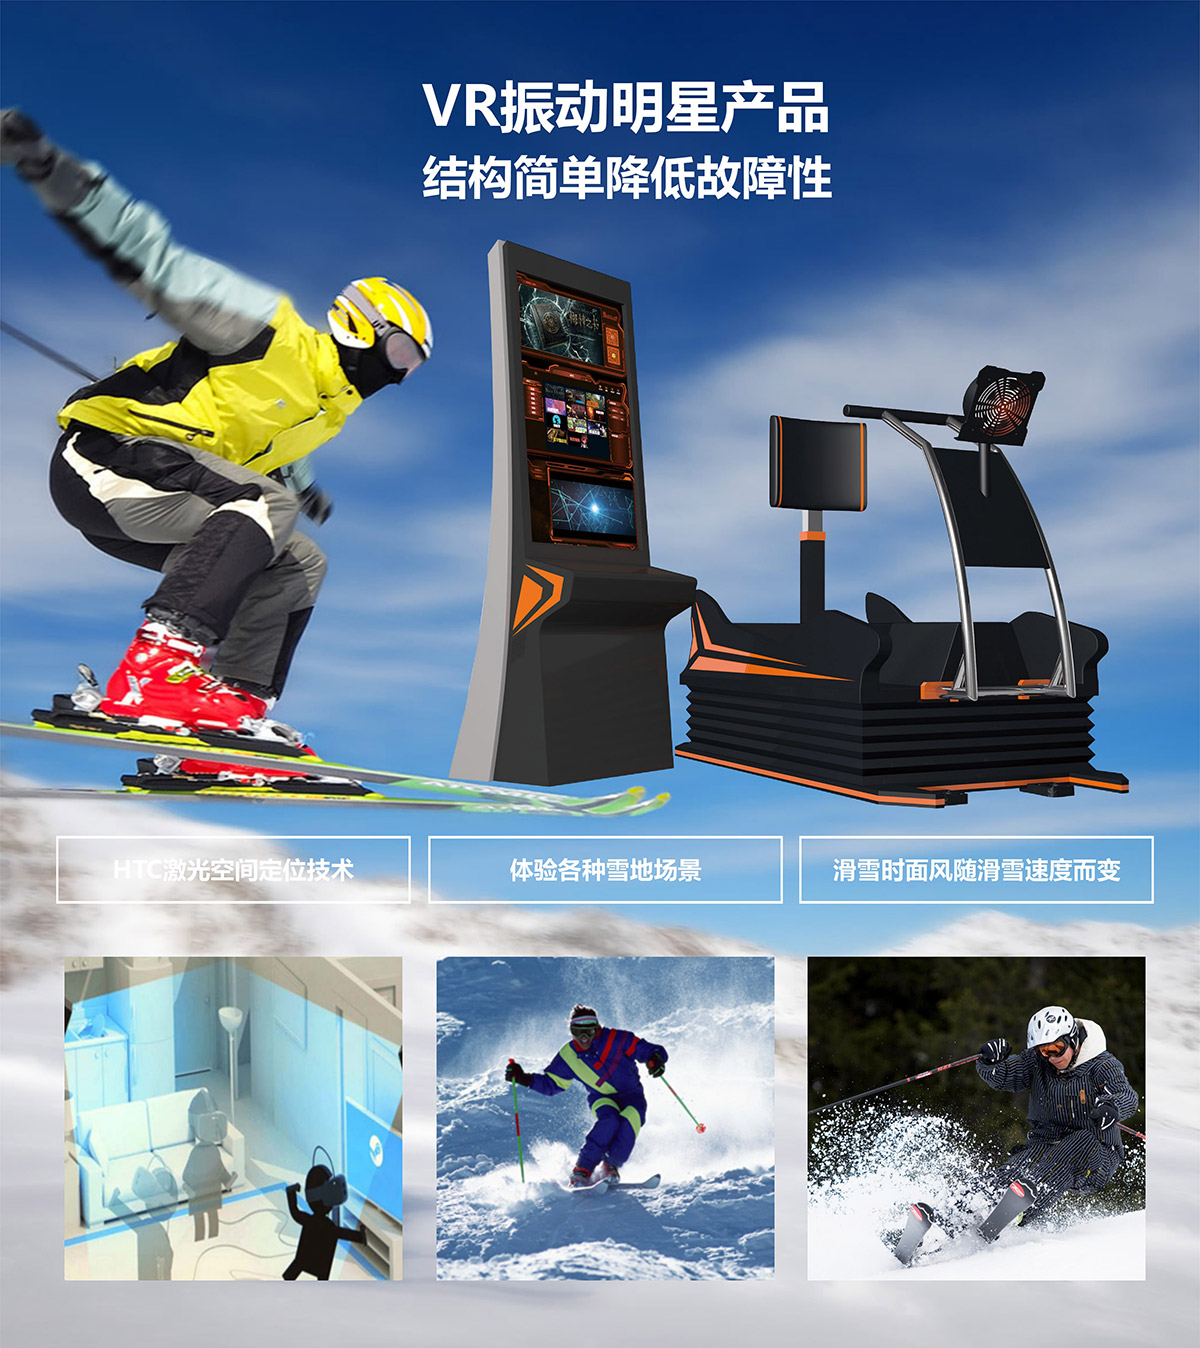 公共安全VR明星产品模拟滑雪.jpg